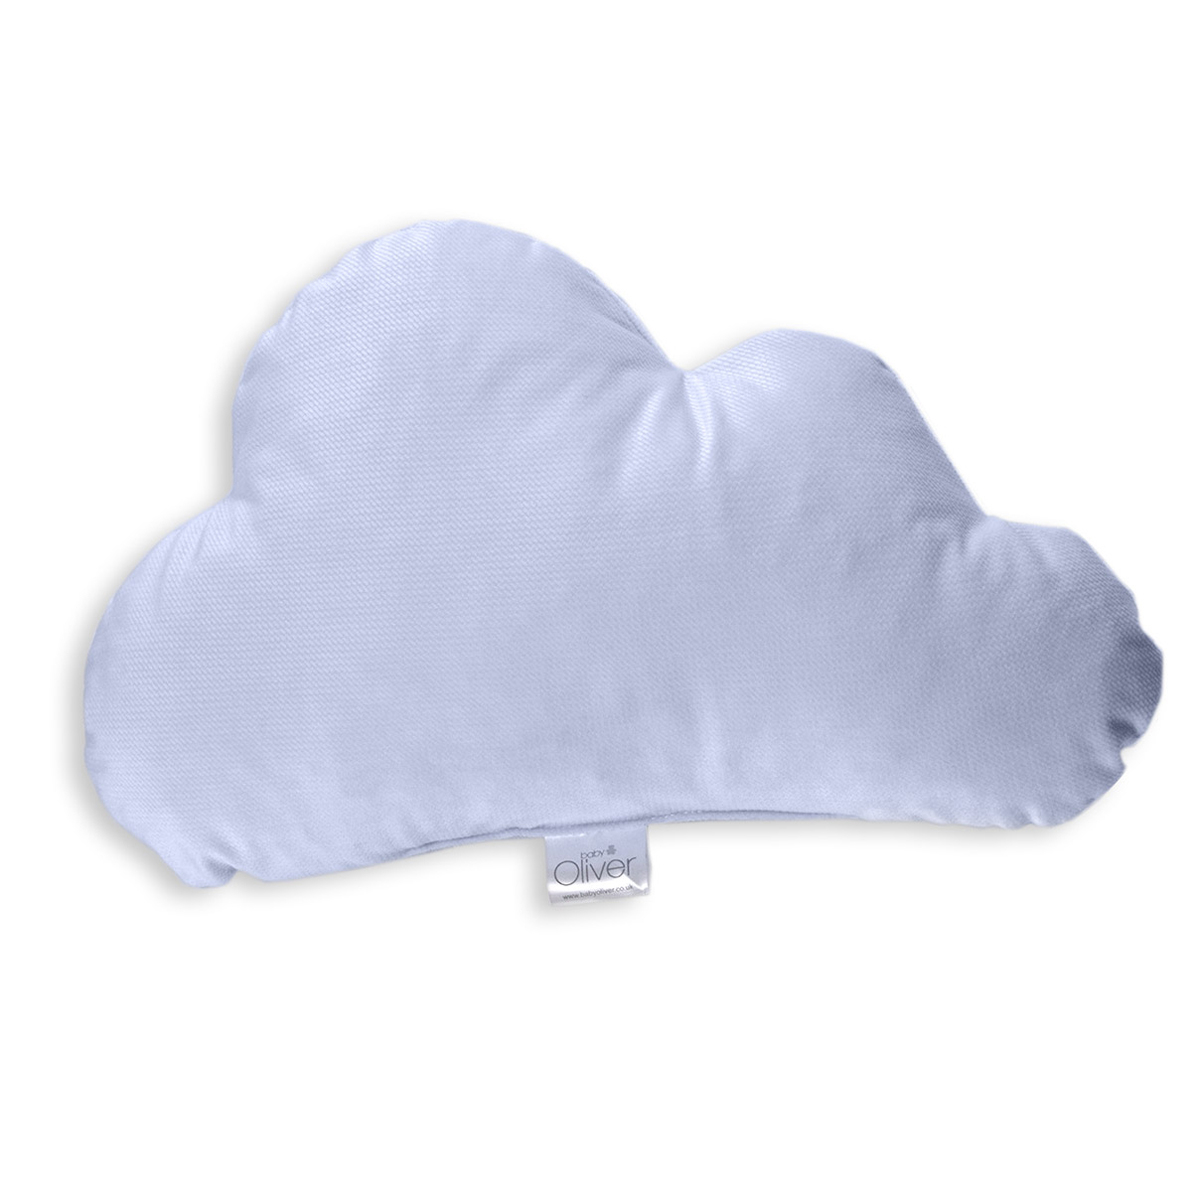 Διακοσμητικό Μαξιλάρι (45×26) Baby Oliver Σύννεφο Σιέλ Des 130 166995